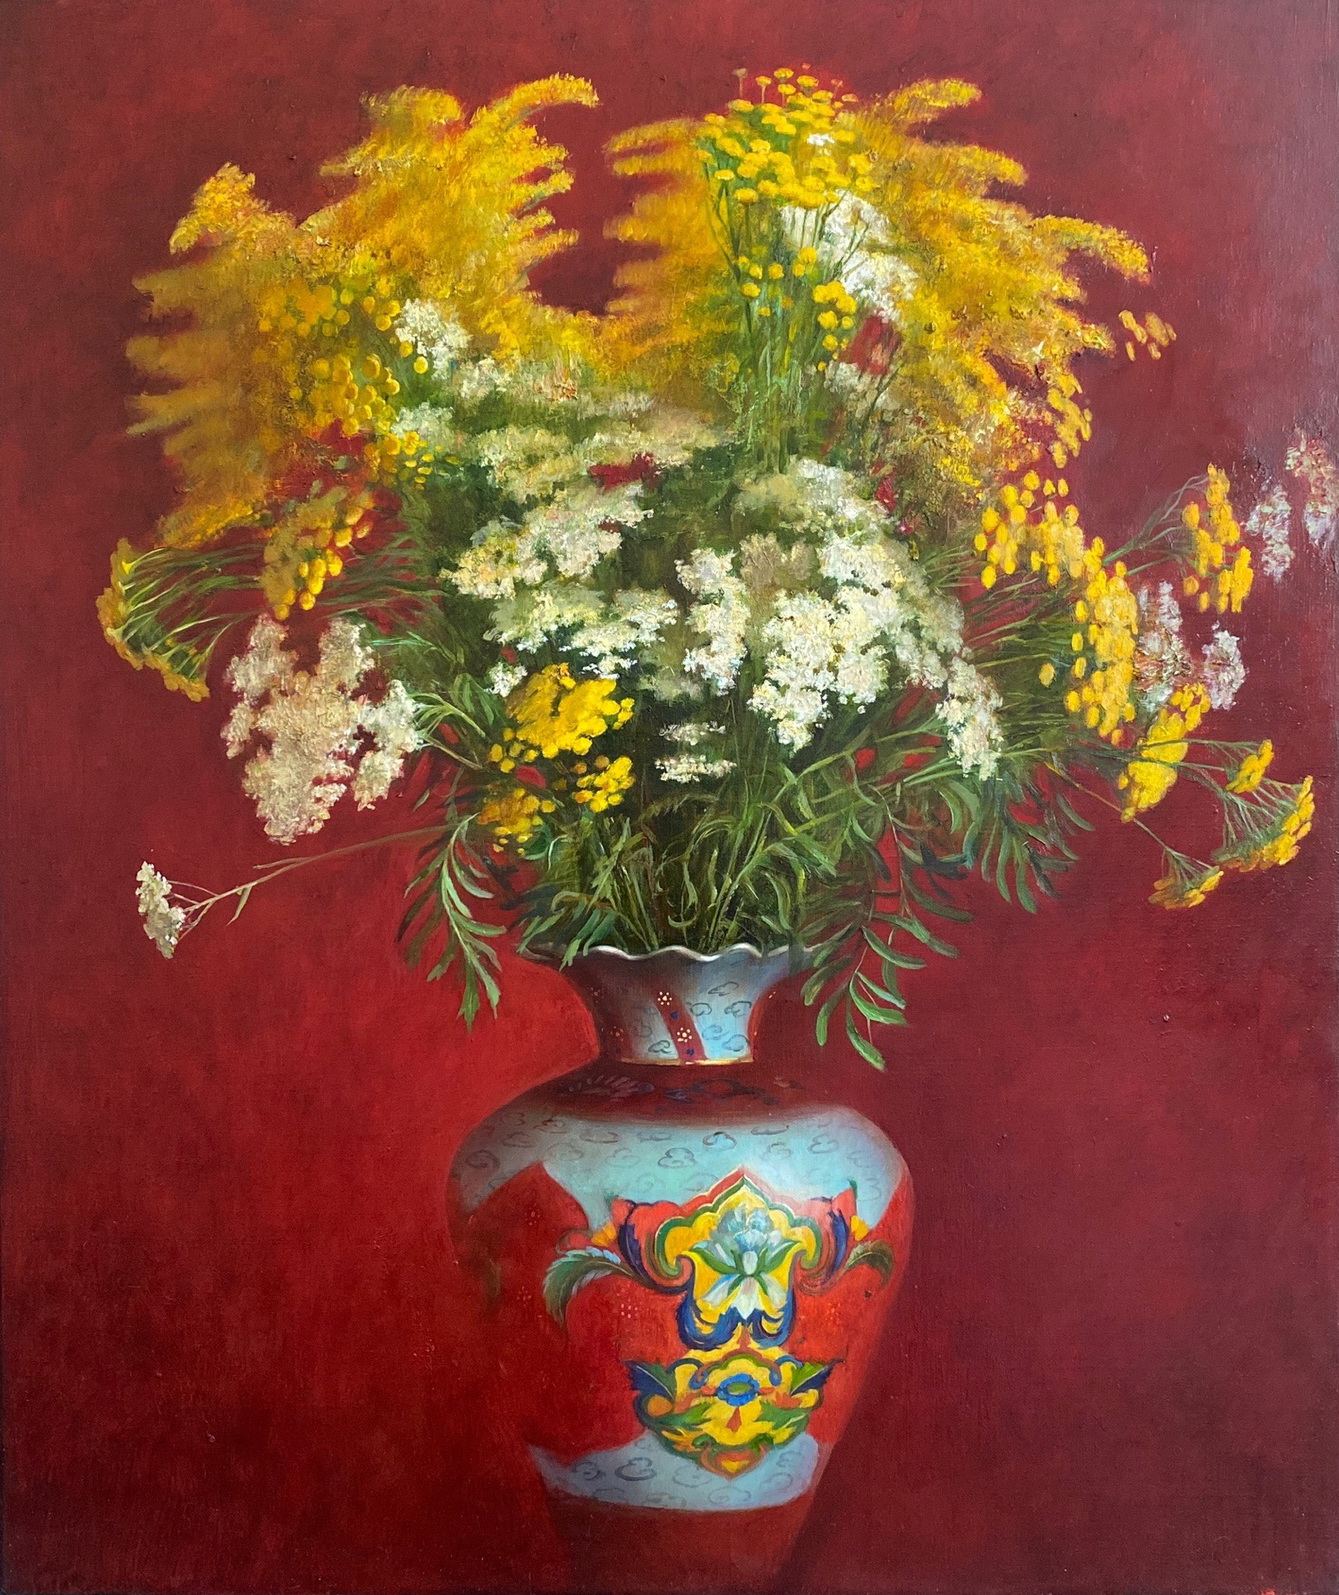 Chinese Vase - 1, Evgenia Shchipakina, Buy the painting Oil